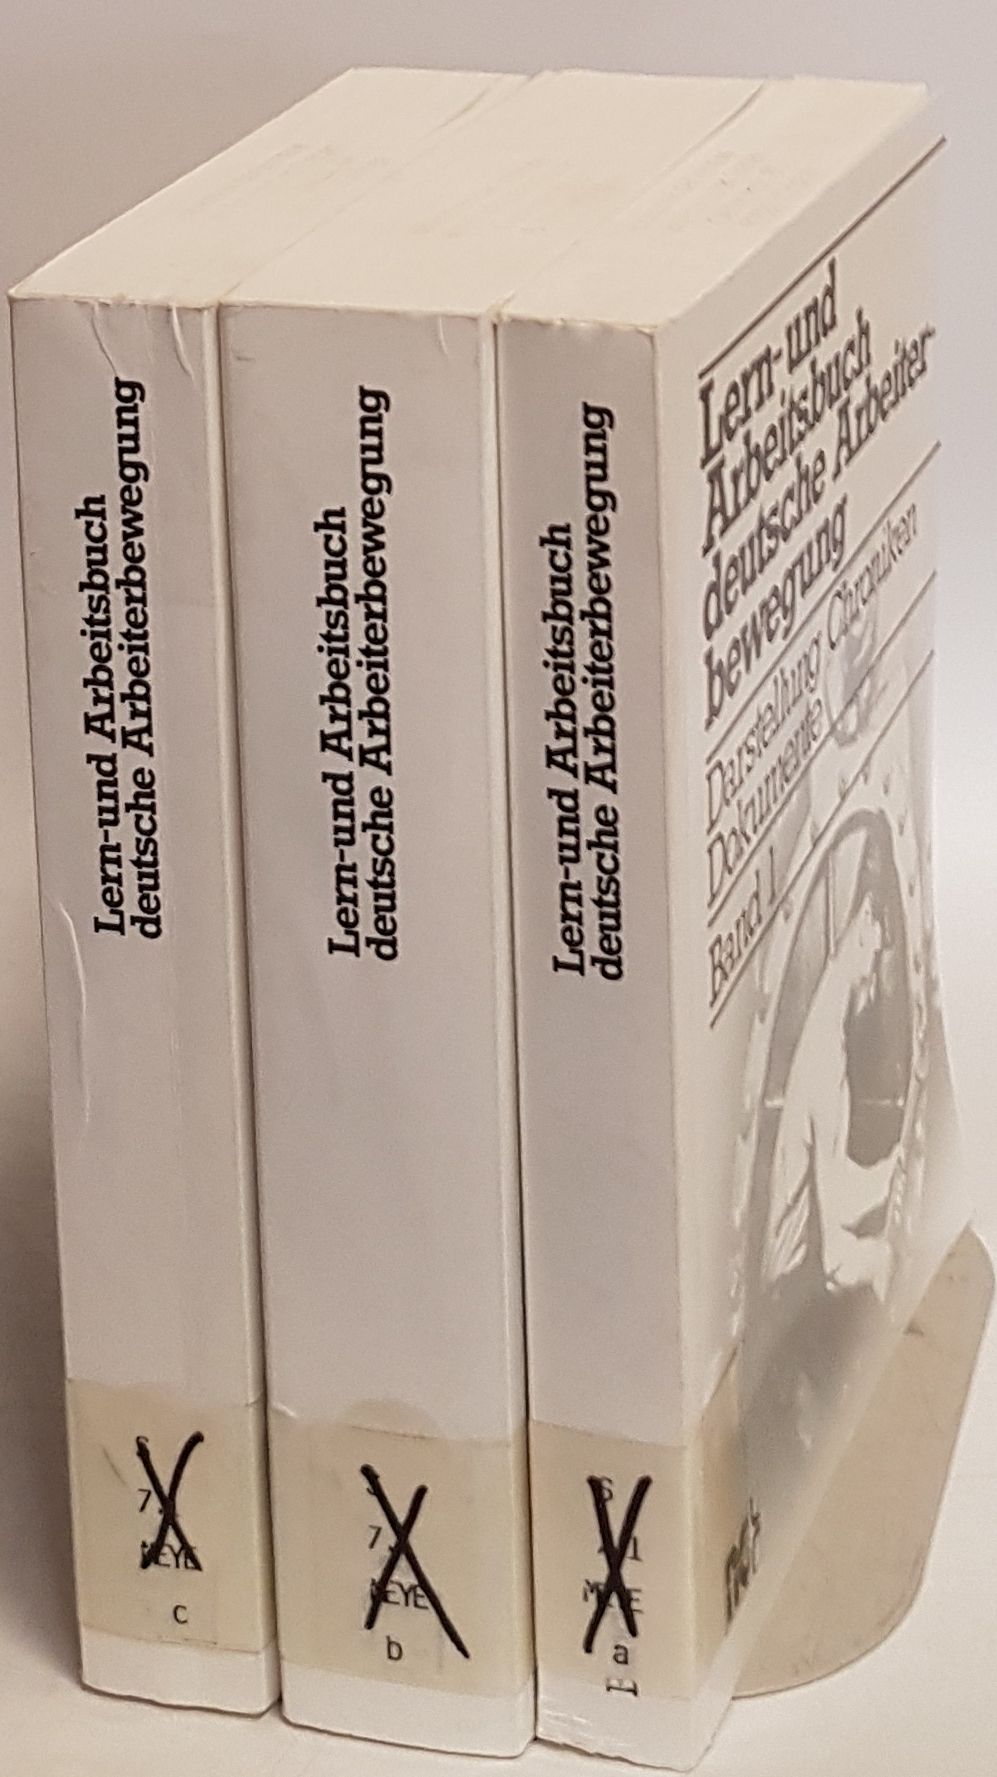 Lern- und Arbeitsbuch deutsche Arbeiterbewegung: Darstellung Chroniken Dokumente (3 Bände KOMPLETT) - Meyer, Thomas, Susanne Miller und Joachim Rohlfes